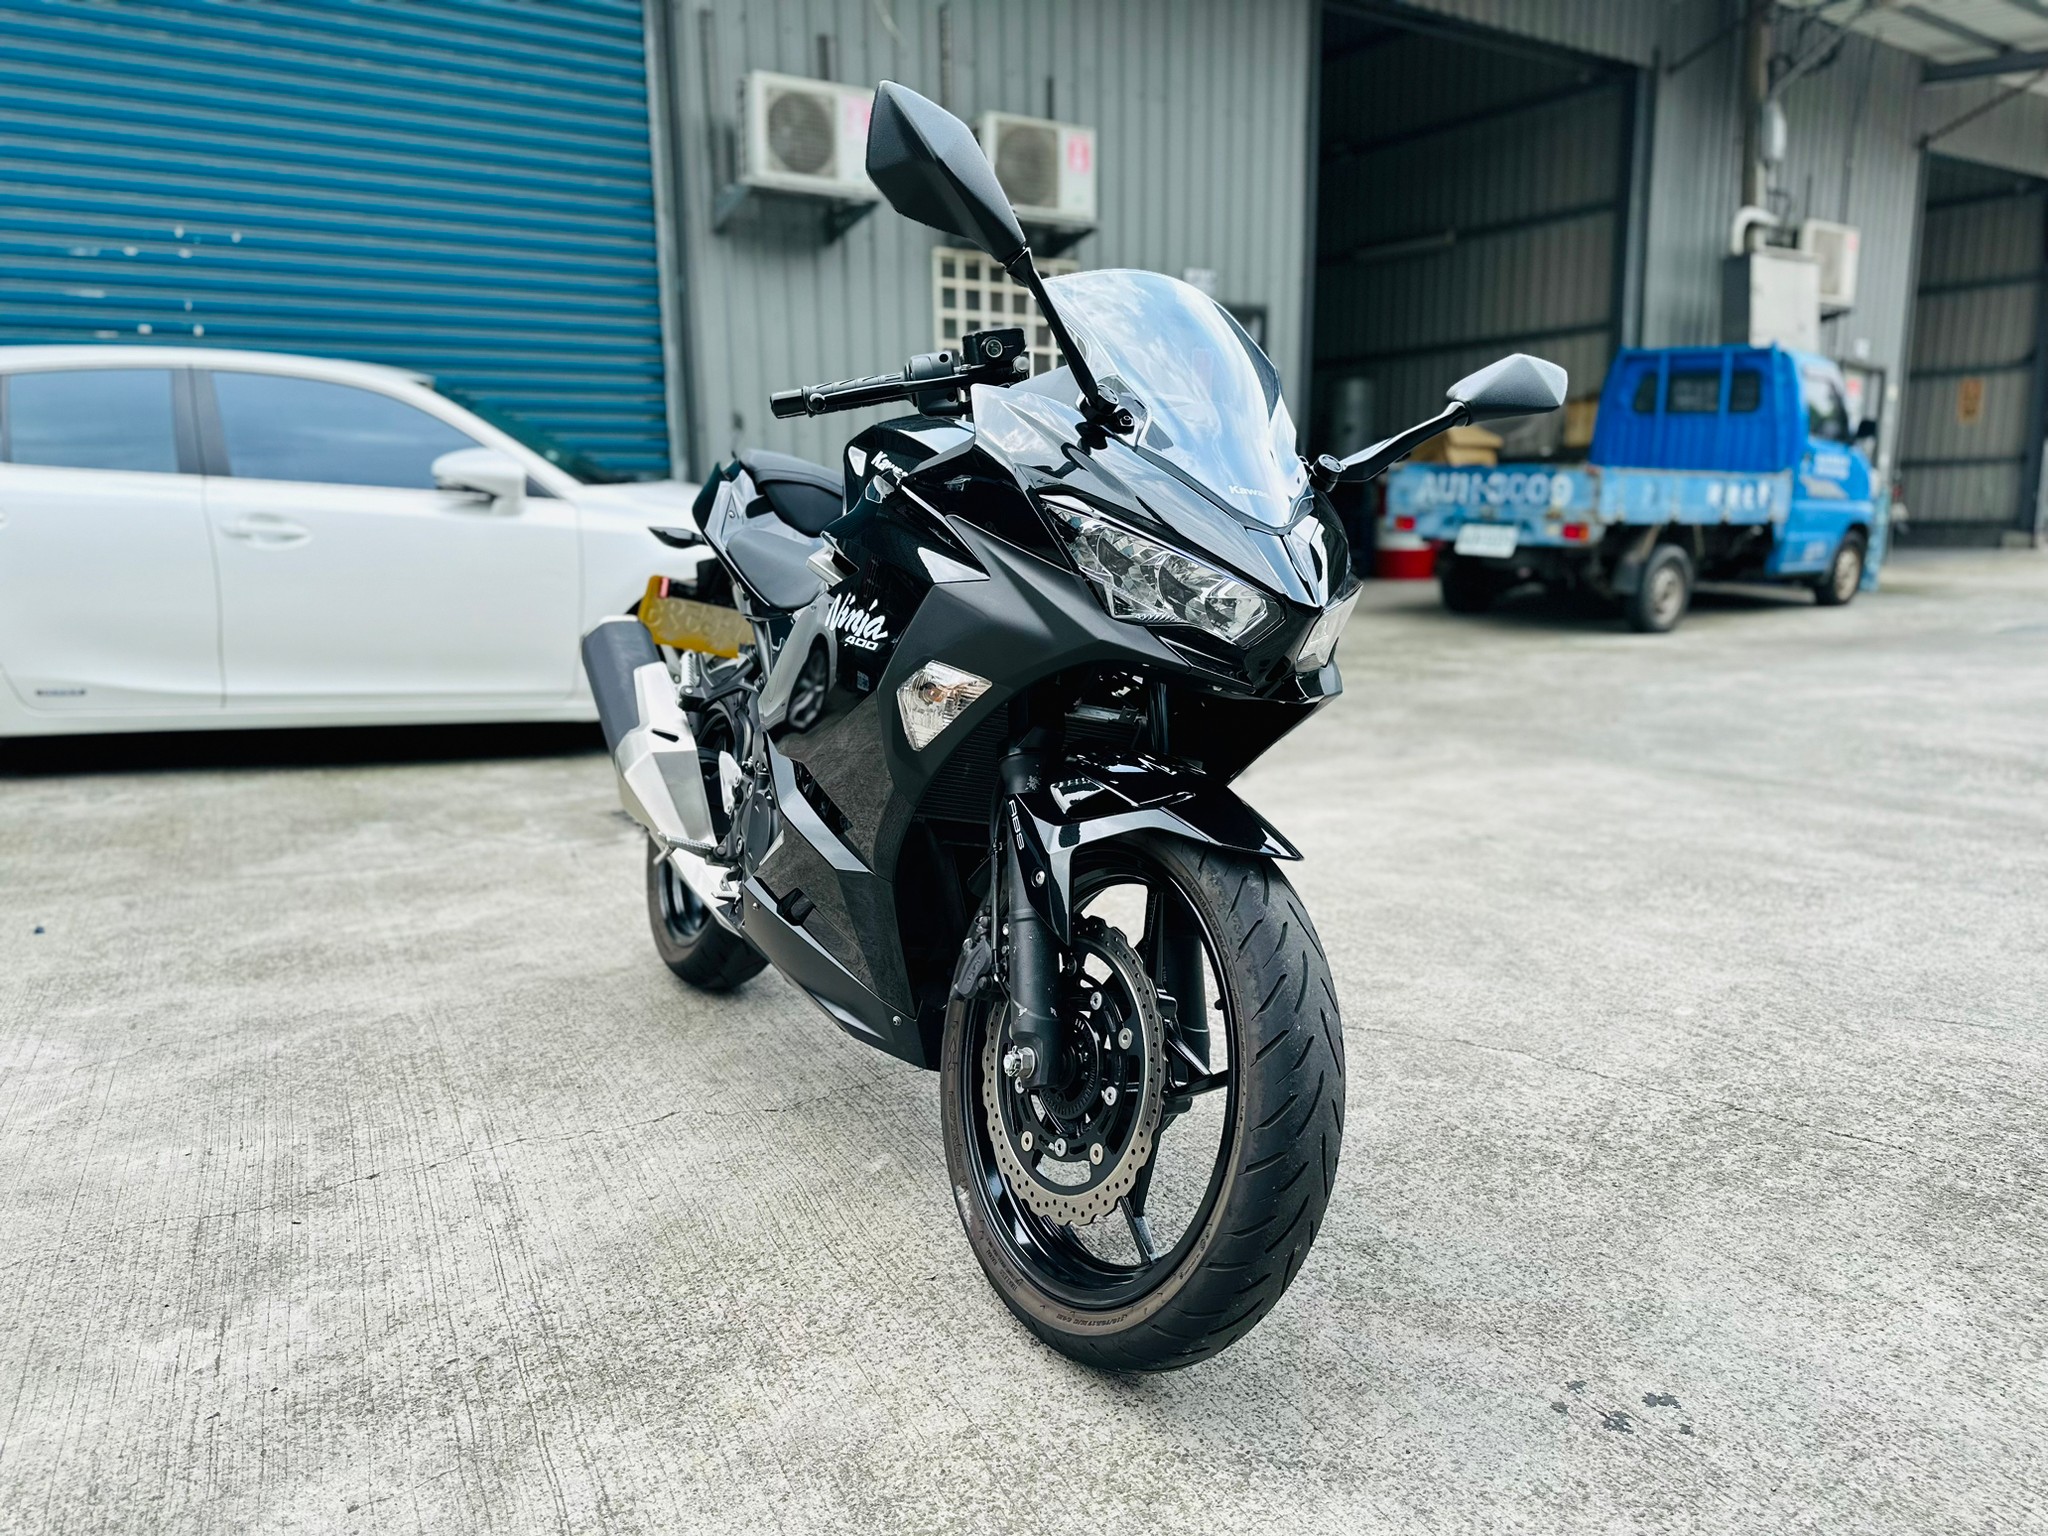 【摩托販】KAWASAKI NINJA400 - 「Webike-摩托車市」 Kawasaki Ninja 400 里程保證原廠保固中